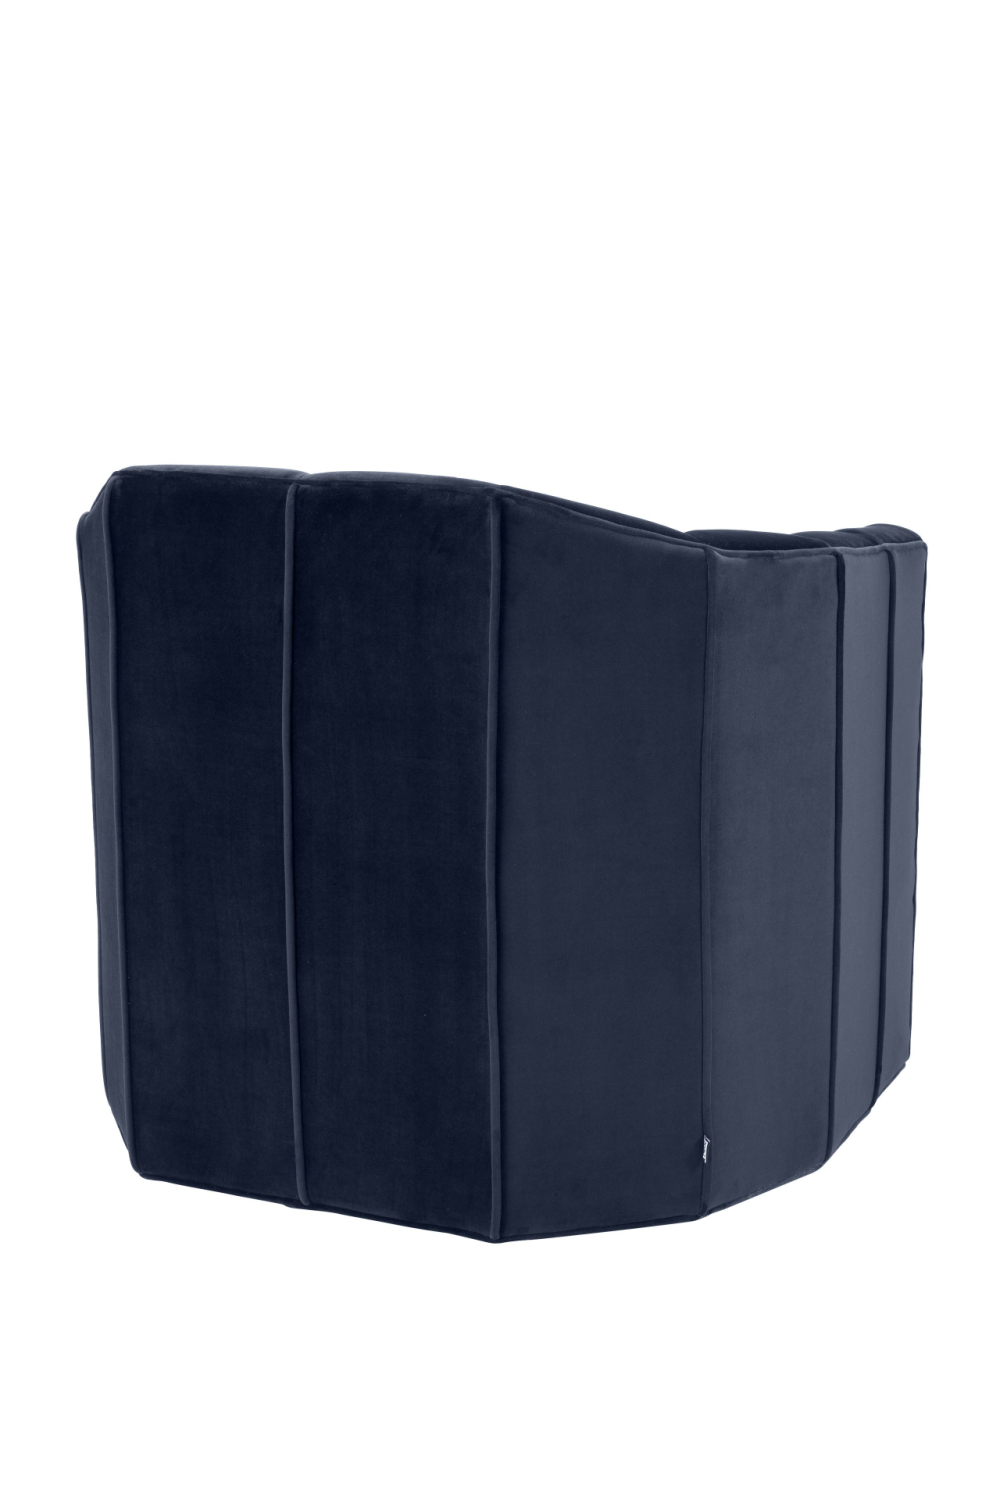 Blue Velvet Panelled Swivel Chair | Eichholtz Delancey | Oroa.com